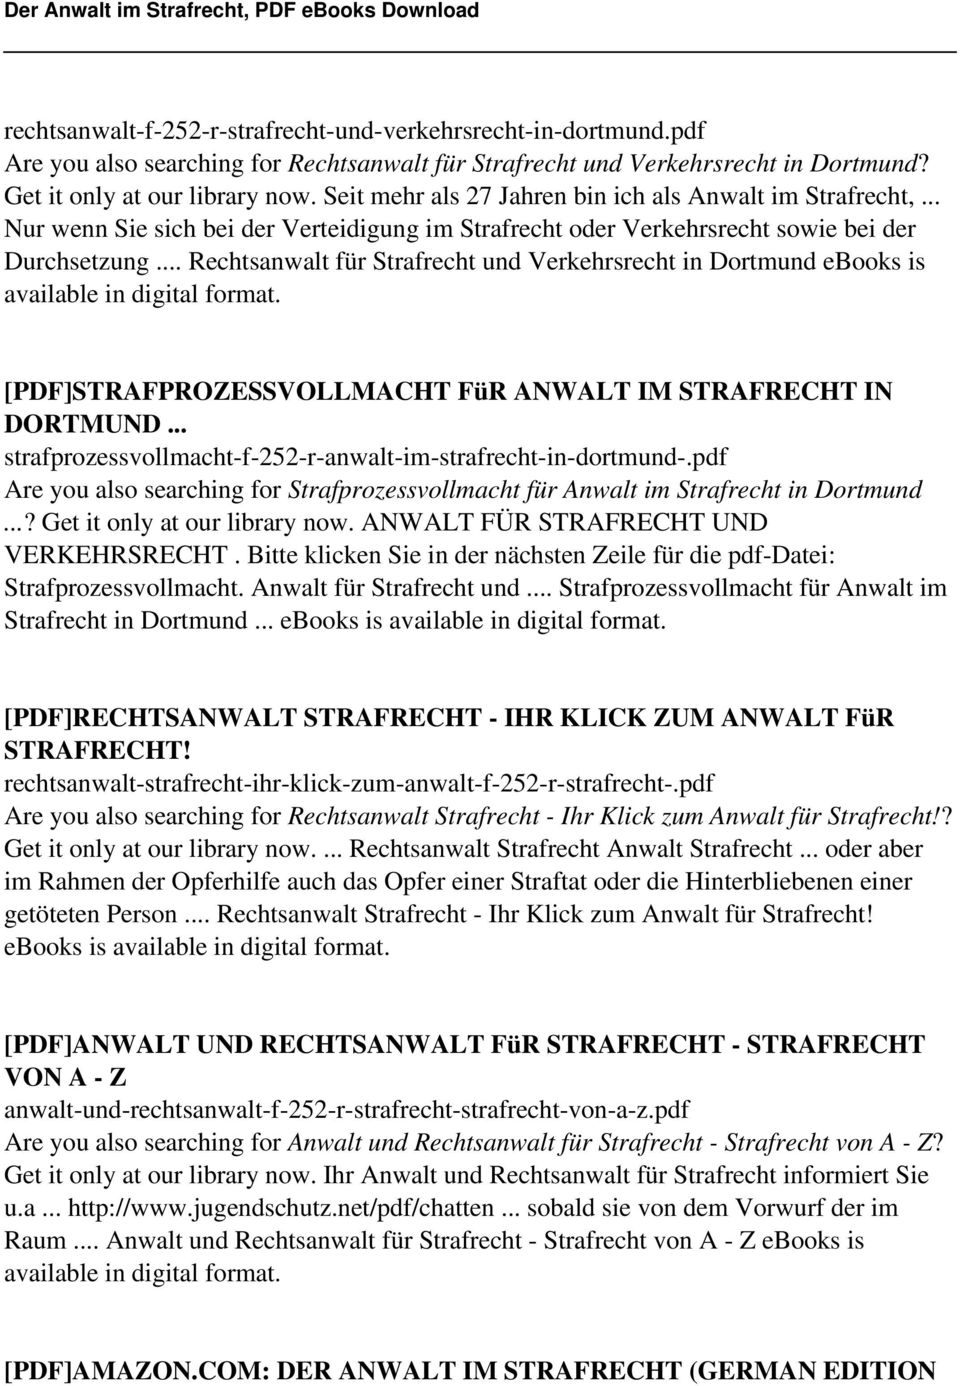 .. Rechtsanwalt für Strafrecht und Verkehrsrecht in Dortmund ebooks is [PDF]STRAFPROZESSVOLLMACHT FüR ANWALT IM STRAFRECHT IN DORTMUND... strafprozessvollmacht-f-252-r-anwalt-im-strafrecht-in-dortmund-.